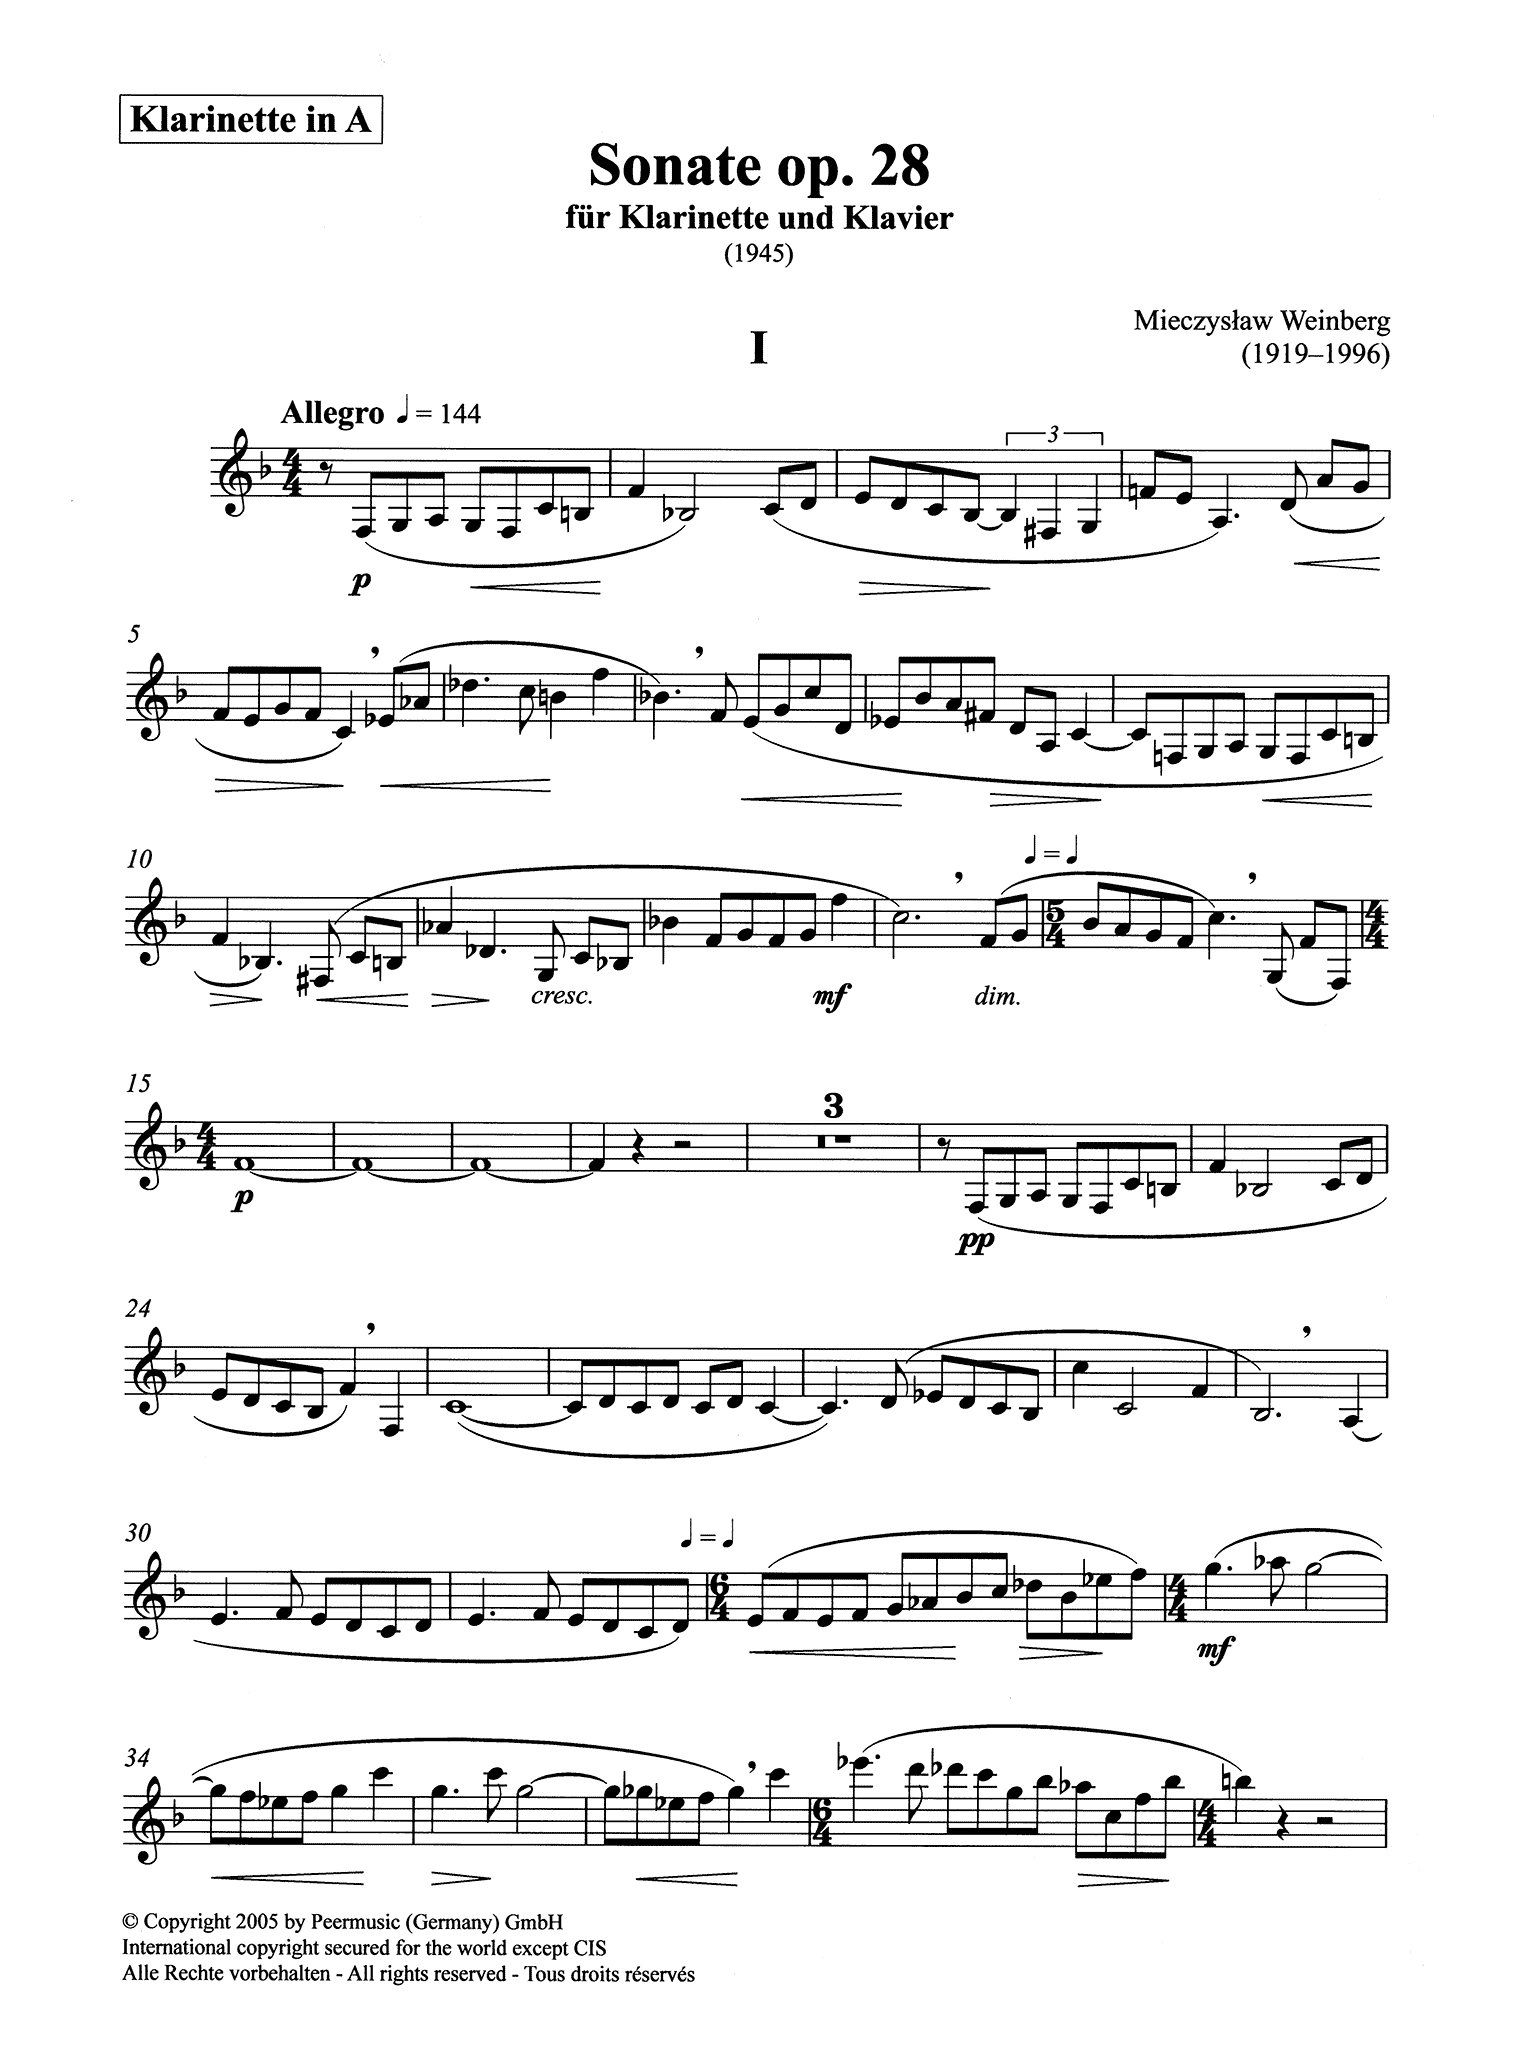 Mieczysław Weinberg Sonata Clarinet & Piano, Op. 28 solo part